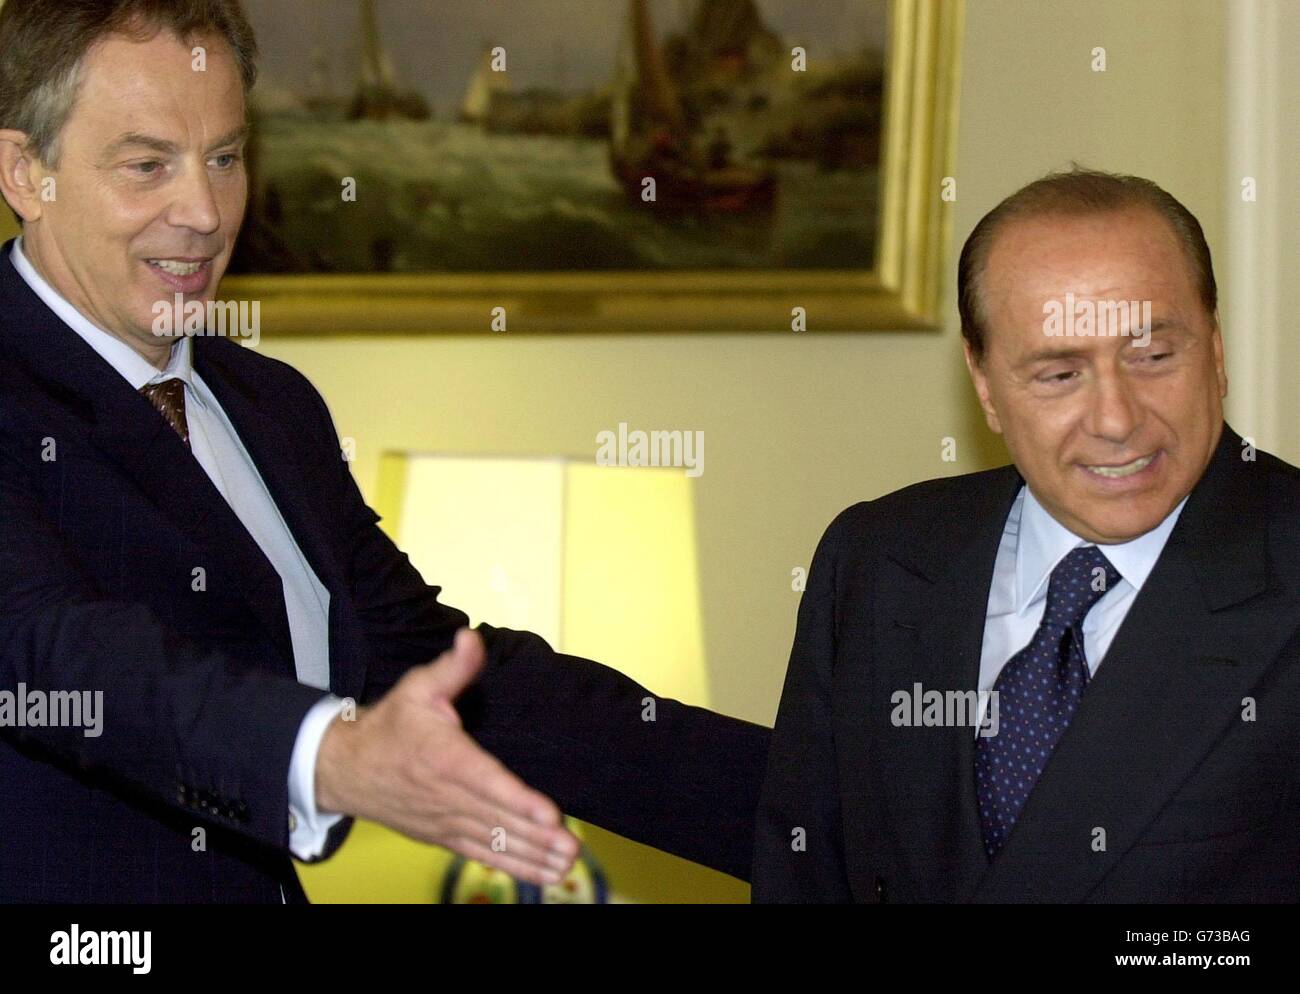 Il primo Ministro Tony Blair, a sinistra, mostra il suo omologo italiano Silvio Berlusconi nella stanza Bianca all'interno della sua residenza londinese al numero 10 di Downing Street, nel centro di Londra, prima di un incontro. Foto Stock